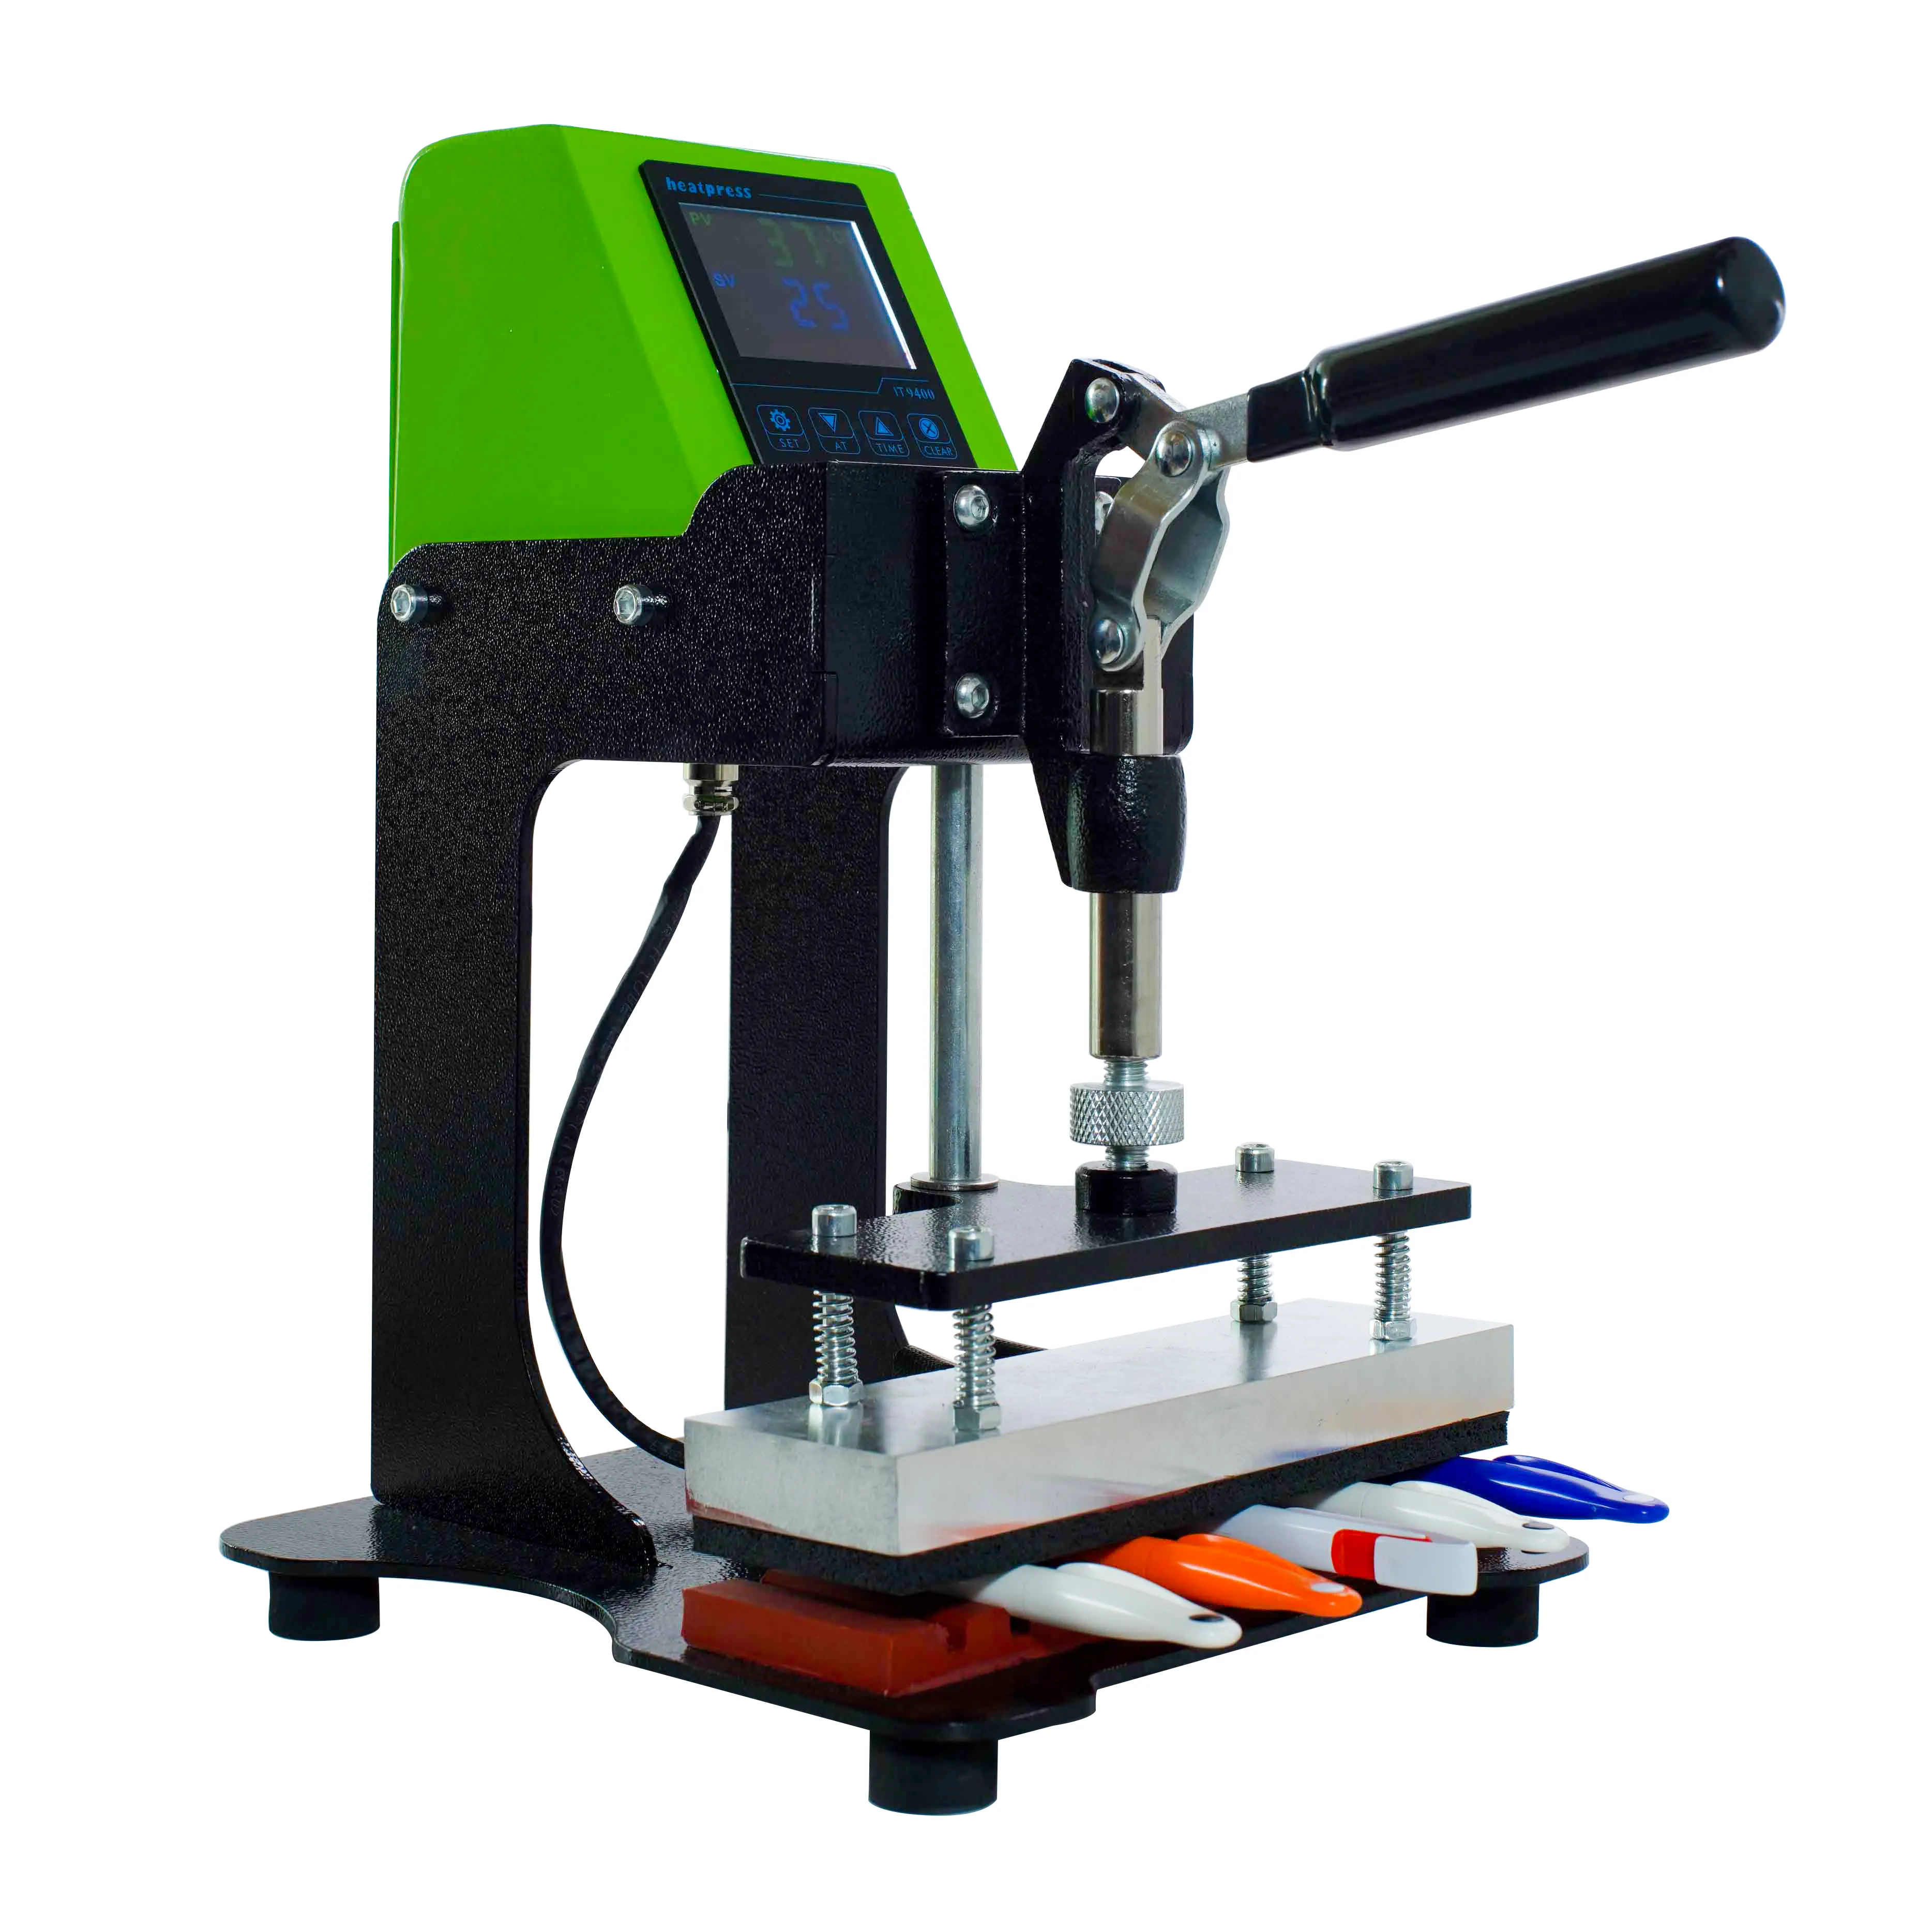 Machine de presse à chaud pour stylo de sublimation d'approvisionnement d'usine Sixfar CE fourni Machine de transfert de chaleur 10 en 1 pour stylo en plastique